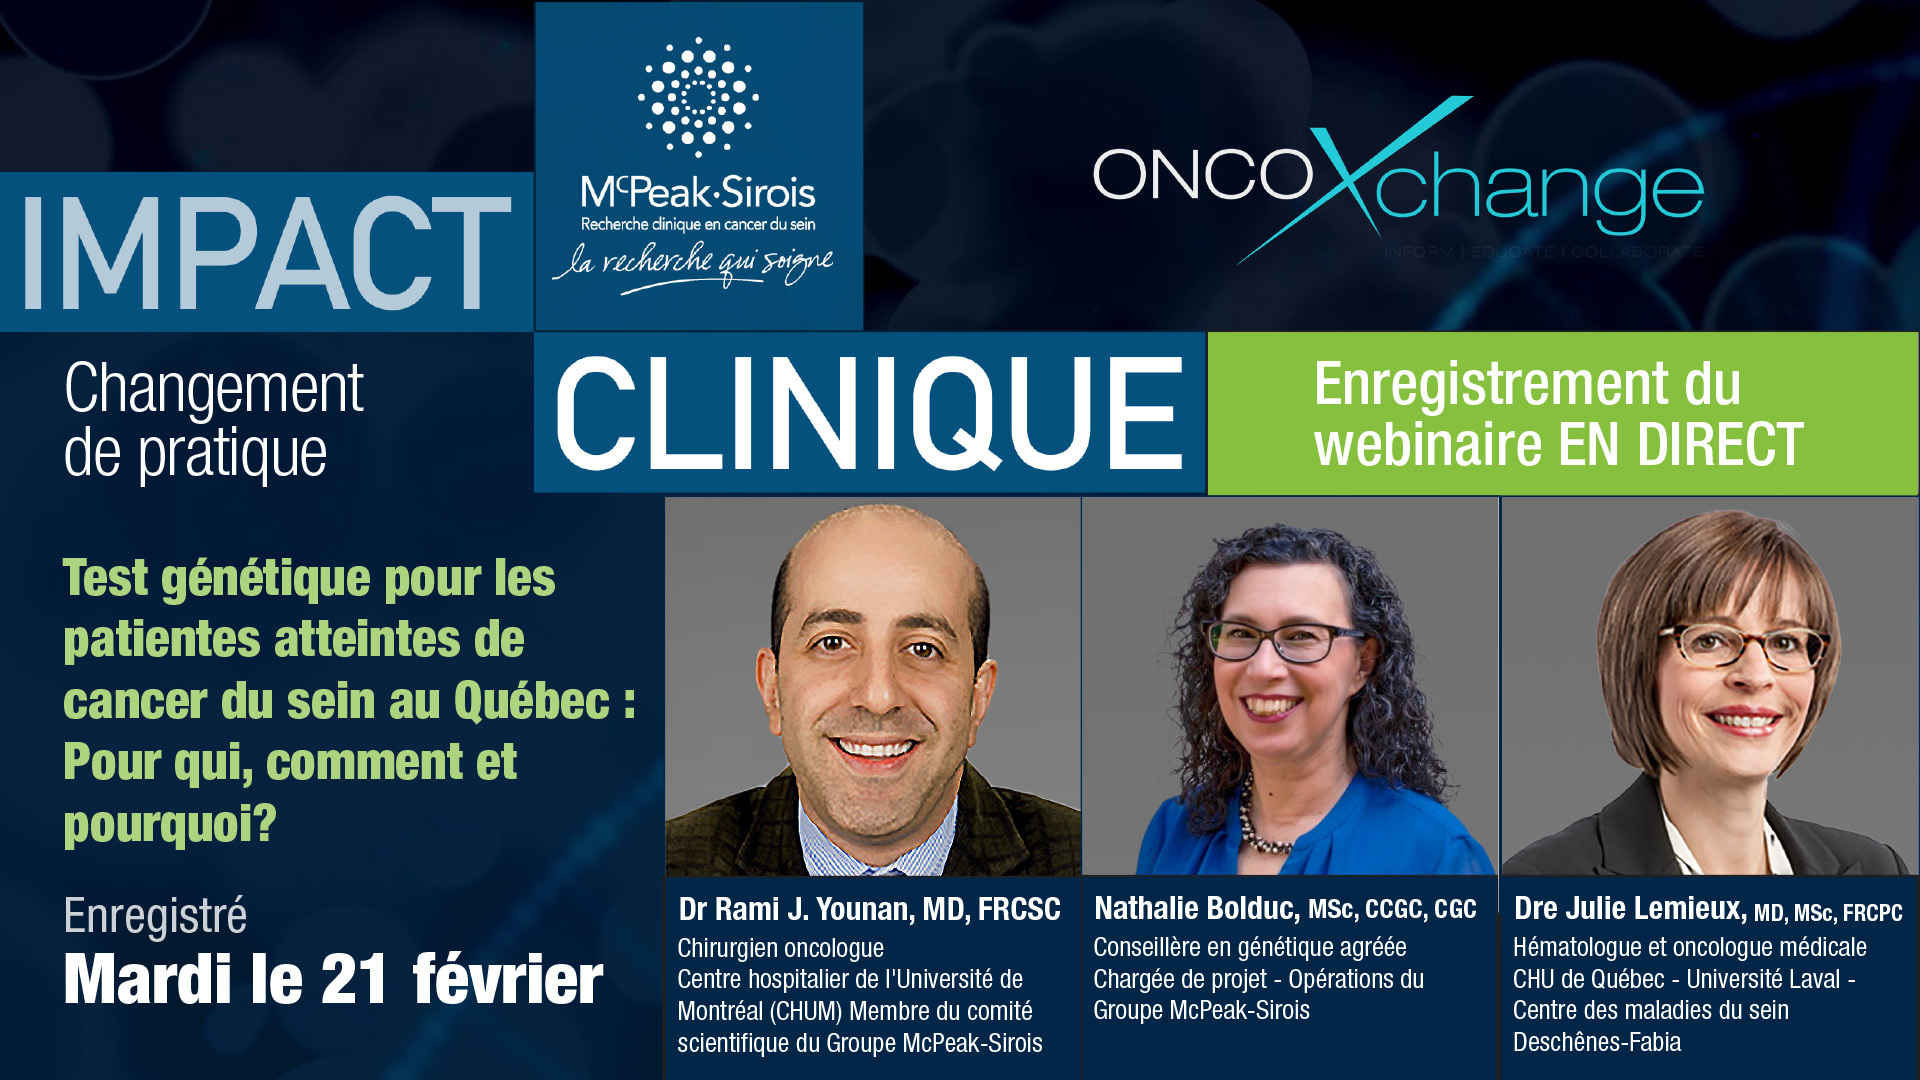 IMPACT CLINIQUE - Test génétique pour les patientes atteintes de  cancer du sein au Québec :  Pour qui, comment et pourquoi?